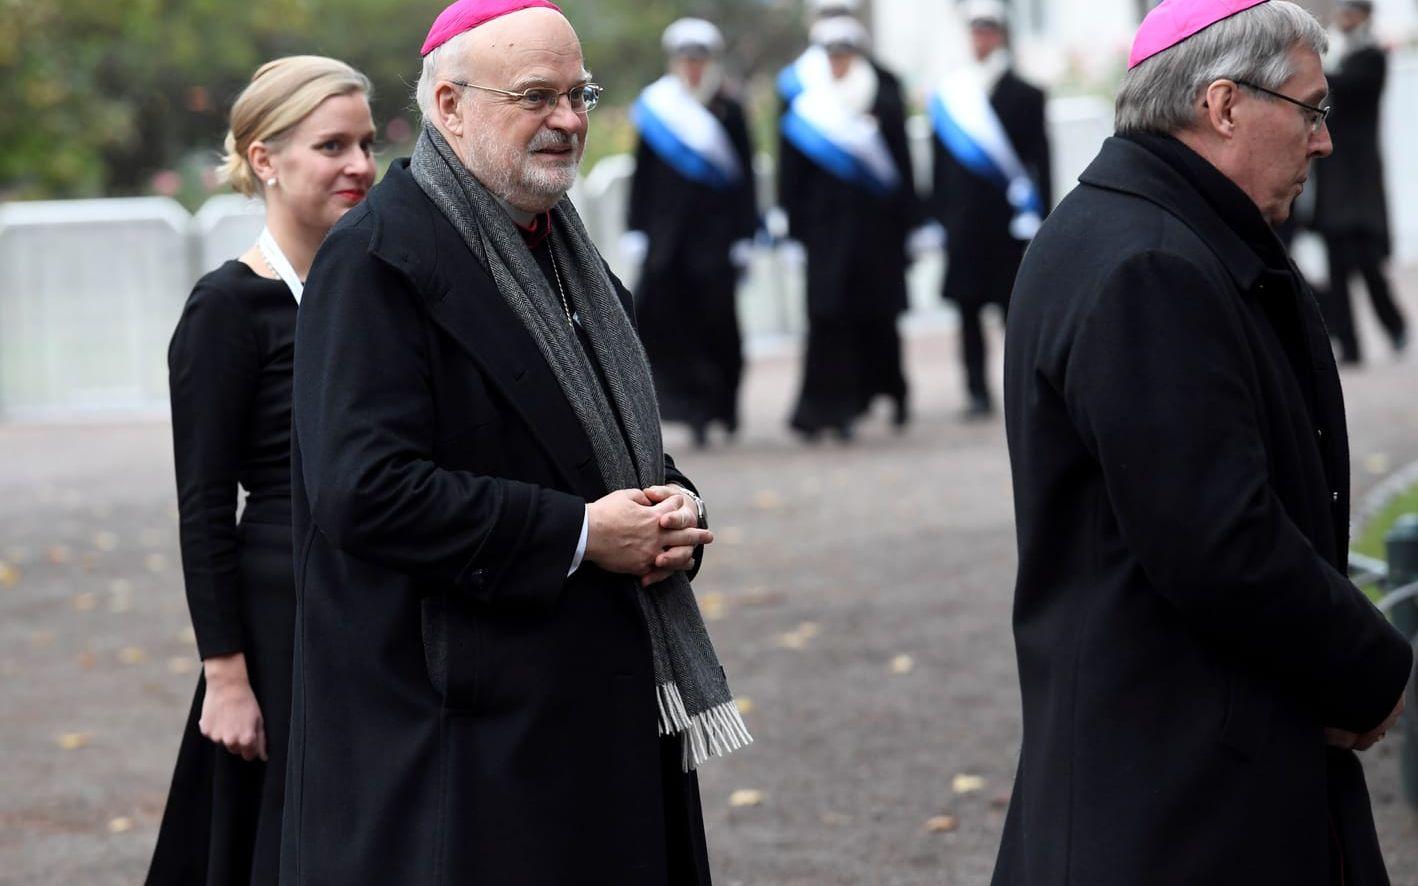 Sveriges katolske biskop Anders Arborelius på väg den enekumeniska mässan i Lunds domkyrka. Foto:Jonas Ekströmer / TT